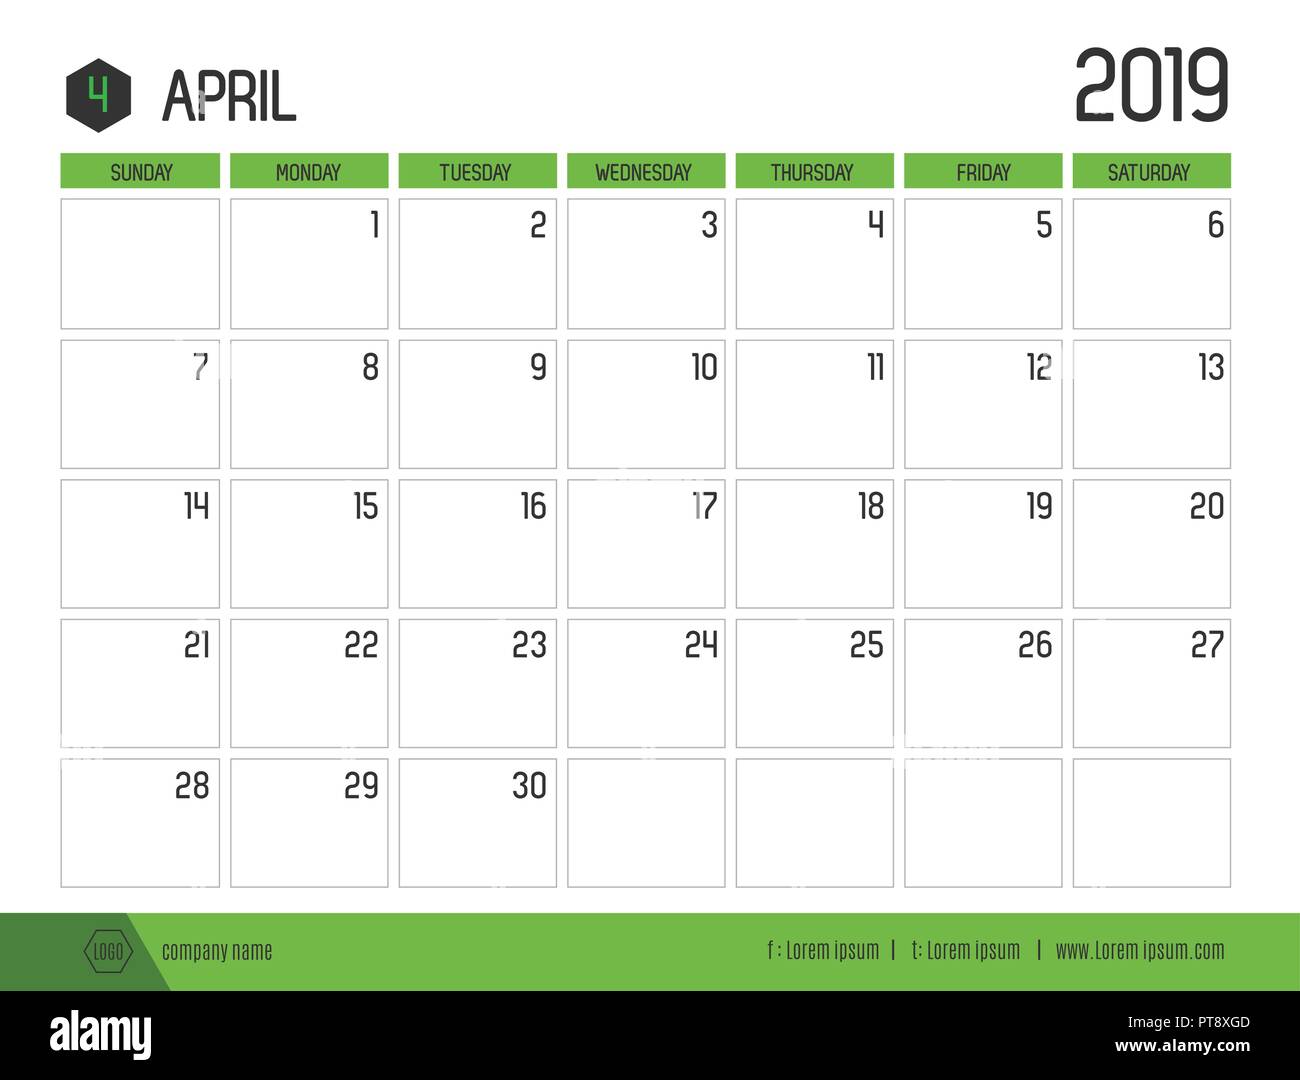 Vecteur de calendrier 2019 vert moderne ( avril ) en simple table propre style.full size 21 x 16 cm ; début de la semaine le dimanche Illustration de Vecteur